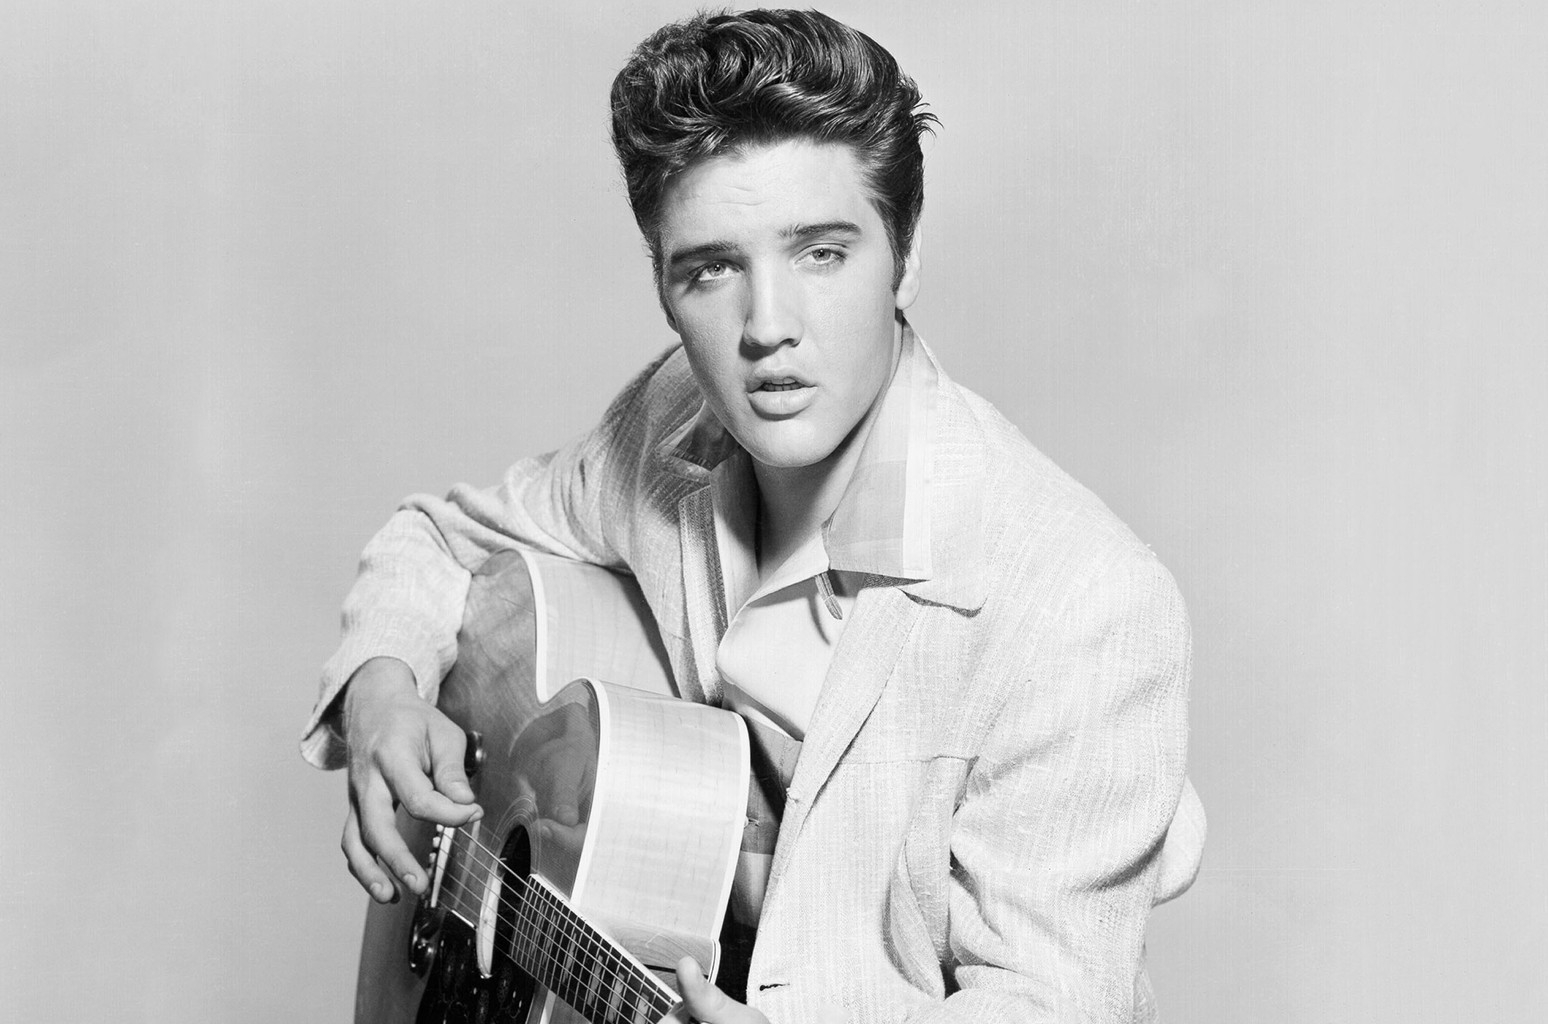 Elvis Presley（エルヴィス・プレスリー）の歴史「キング・オブ・ロックンロール」と称されるまでを8つの時代に凝縮 | 洋楽まっぷ